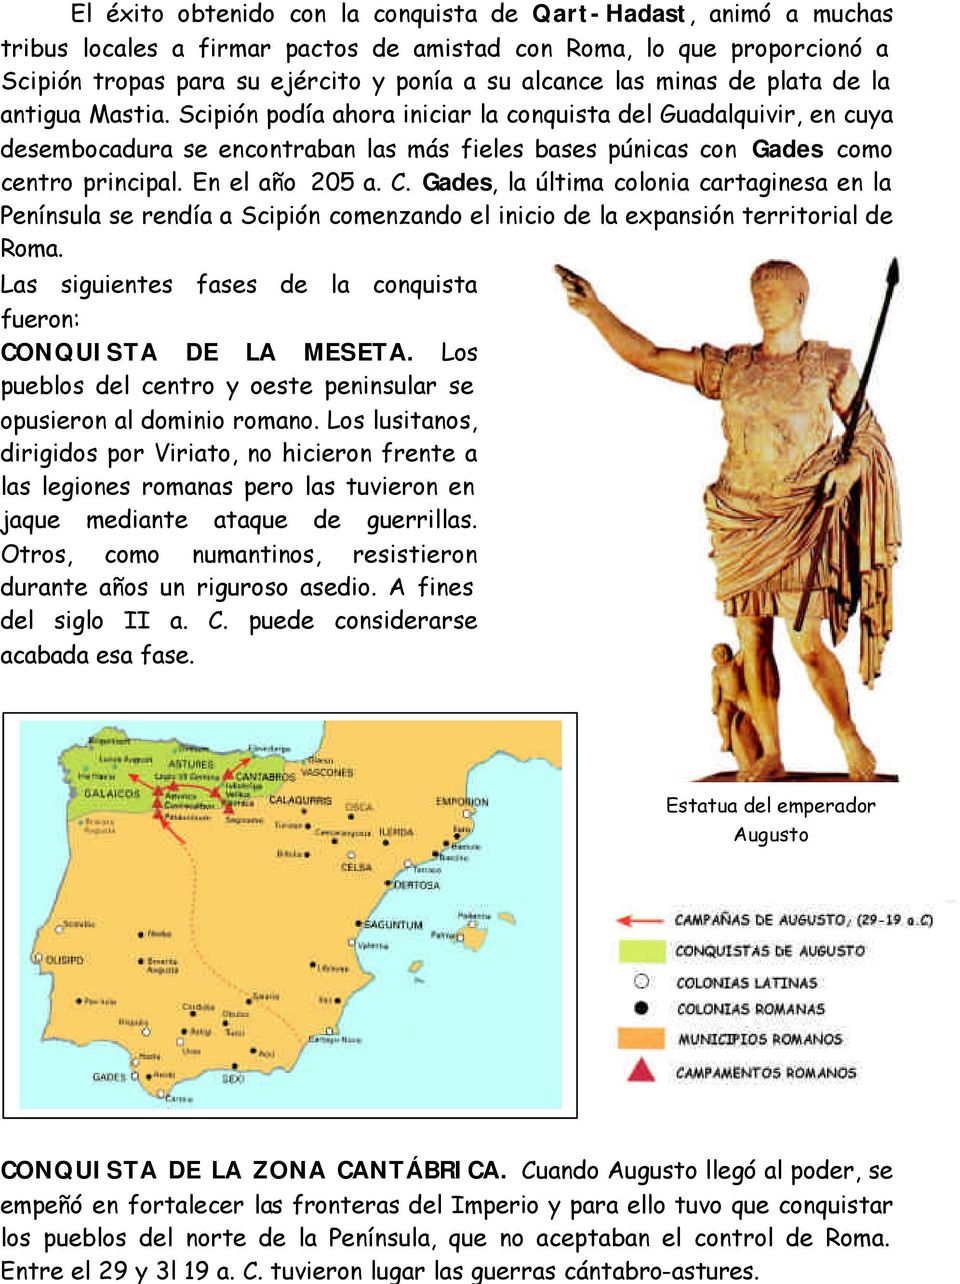 En el año 205 a. C. Gades, la última colonia cartaginesa en la Península se rendía a Scipión comenzando el inicio de la expansión territorial de Roma.